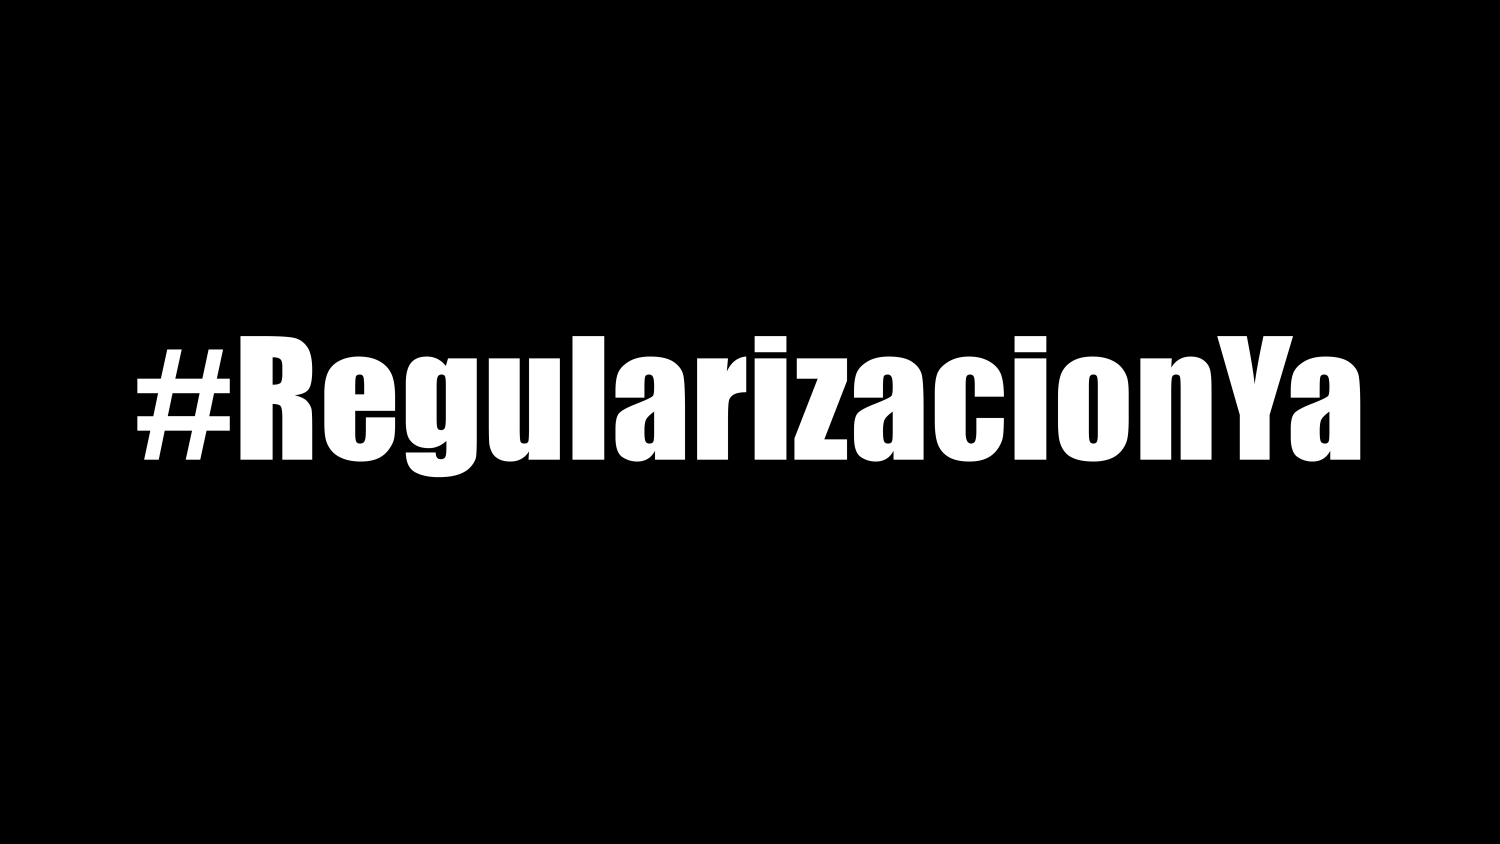 #RegularizaciónYa: Demanda urgent per la regularització les persones migrants i refugiades davant l’emergència sanitària